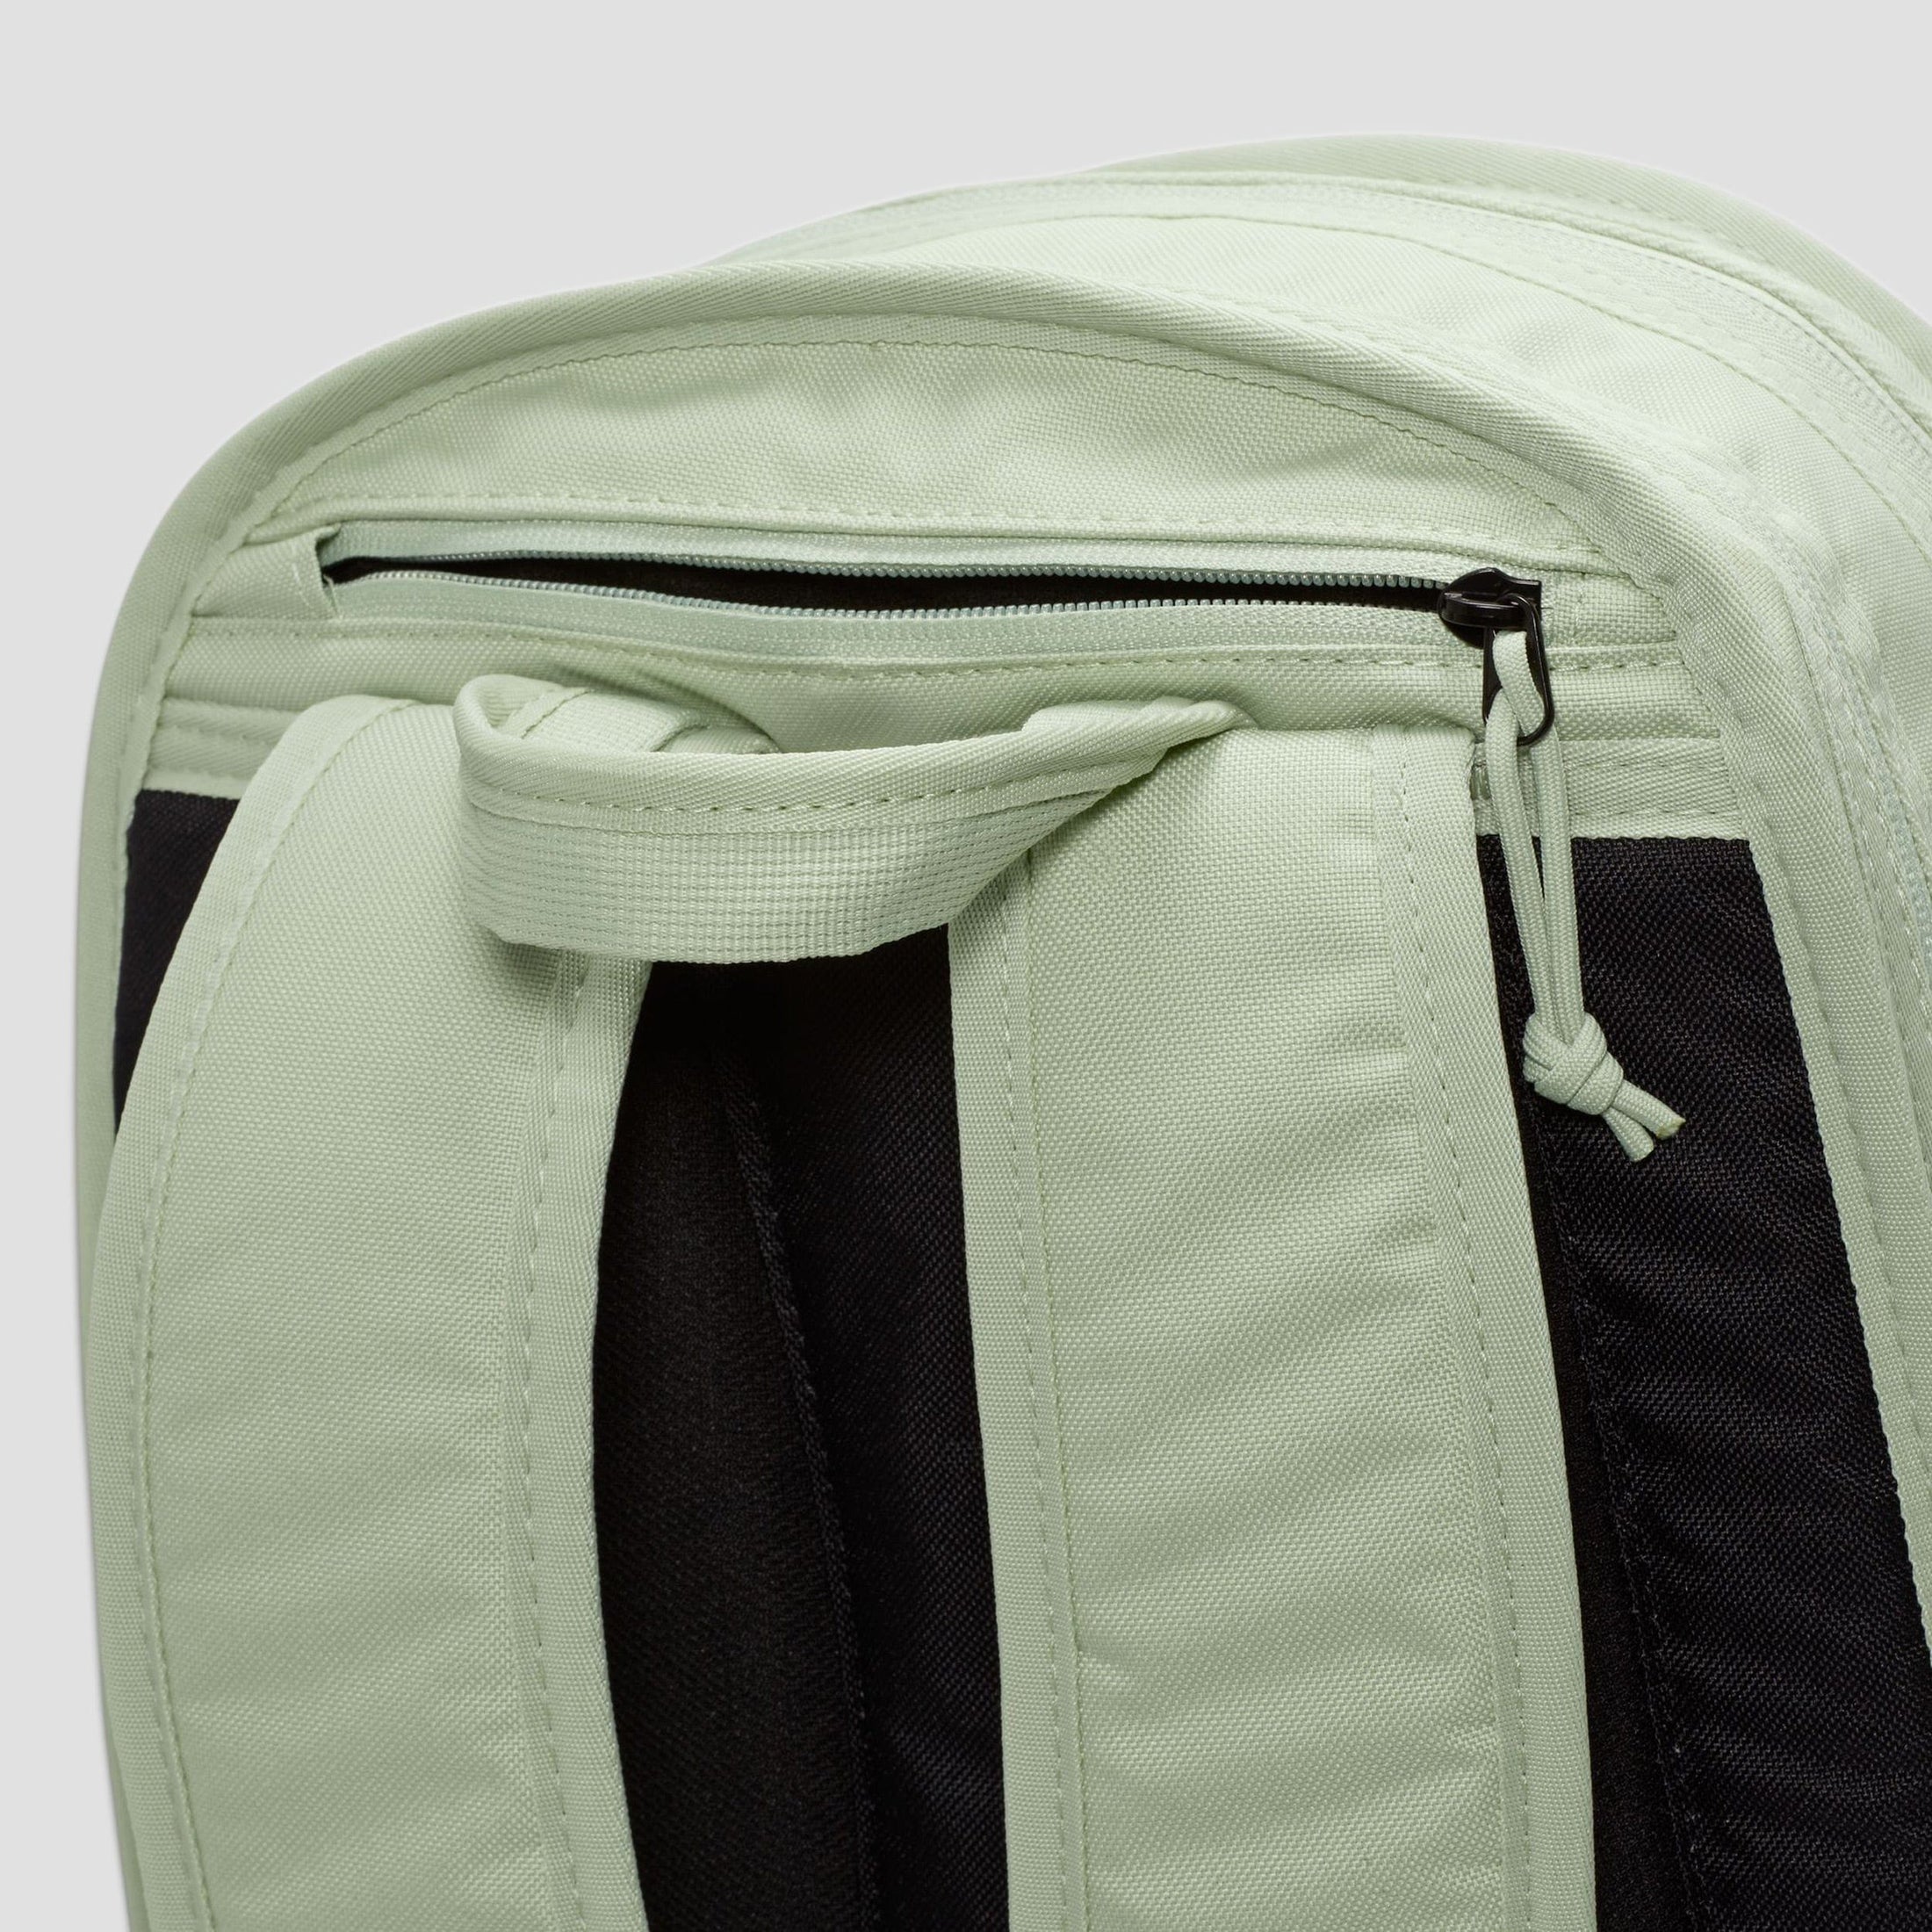 Nike SB RPM Backpack Honeydew / Black / White